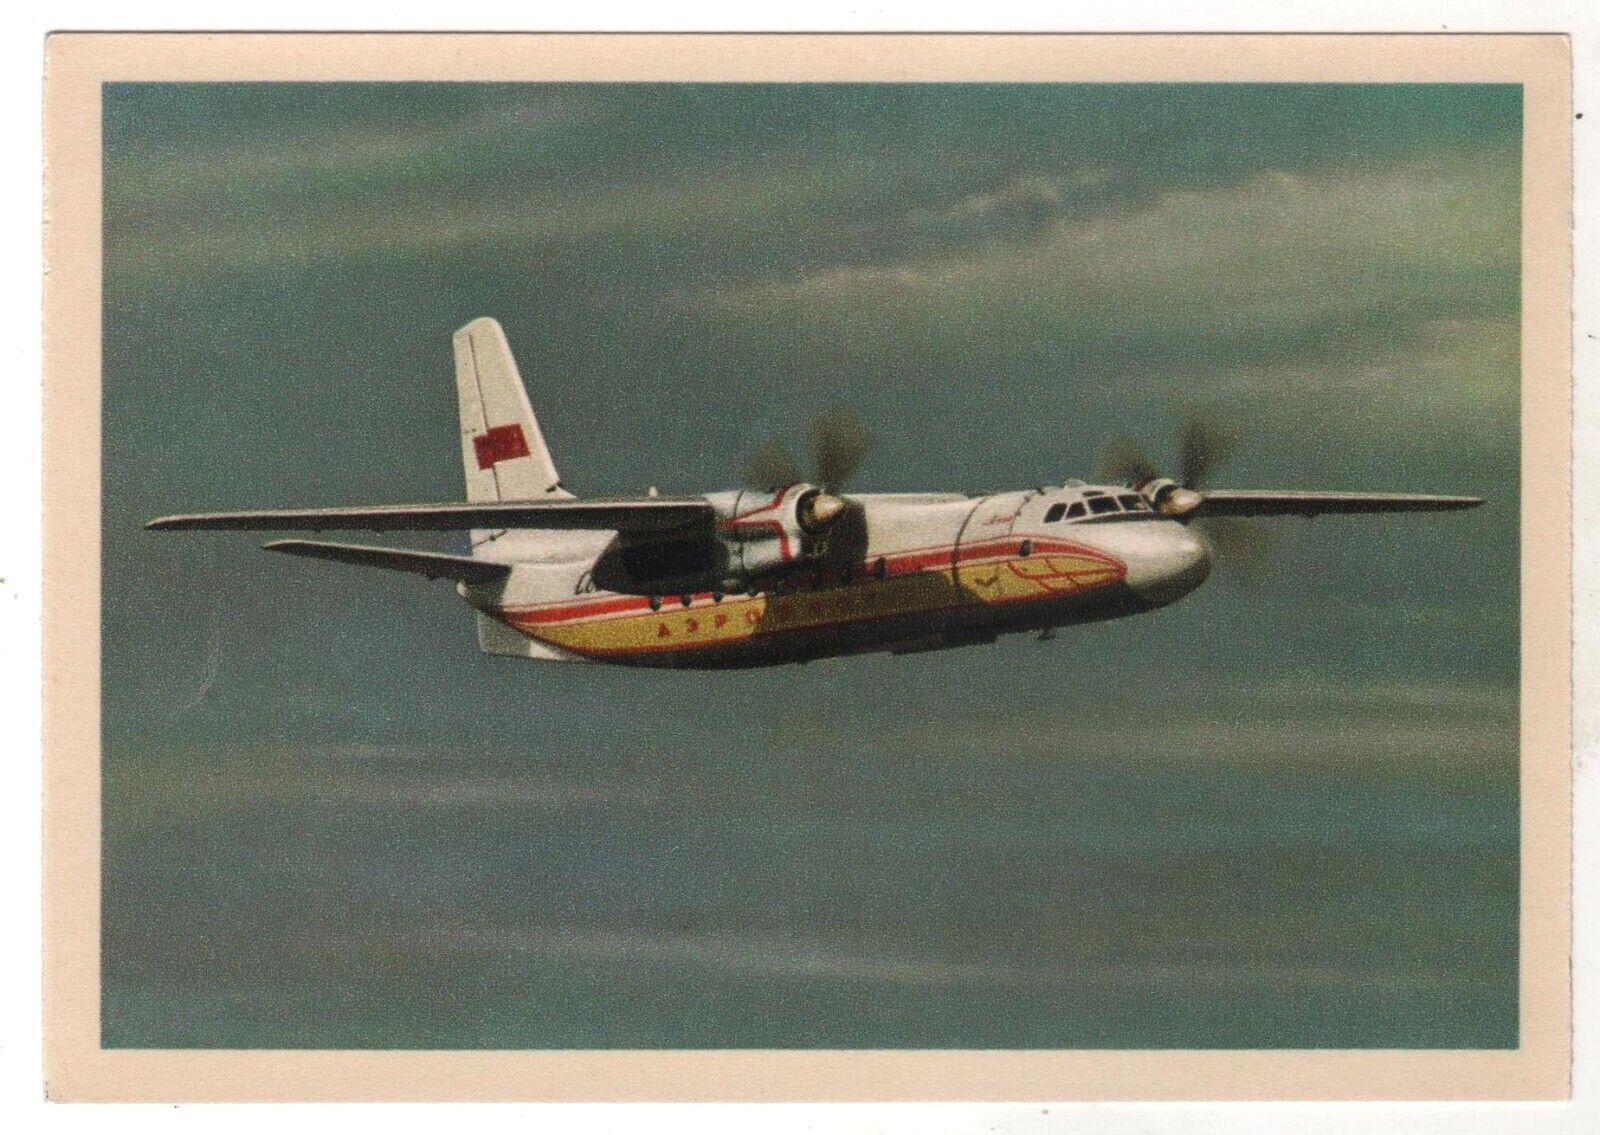 AEROFLOT Passenger aircraft AN-24 Airplane Aviation USSR Russian Postcard Old